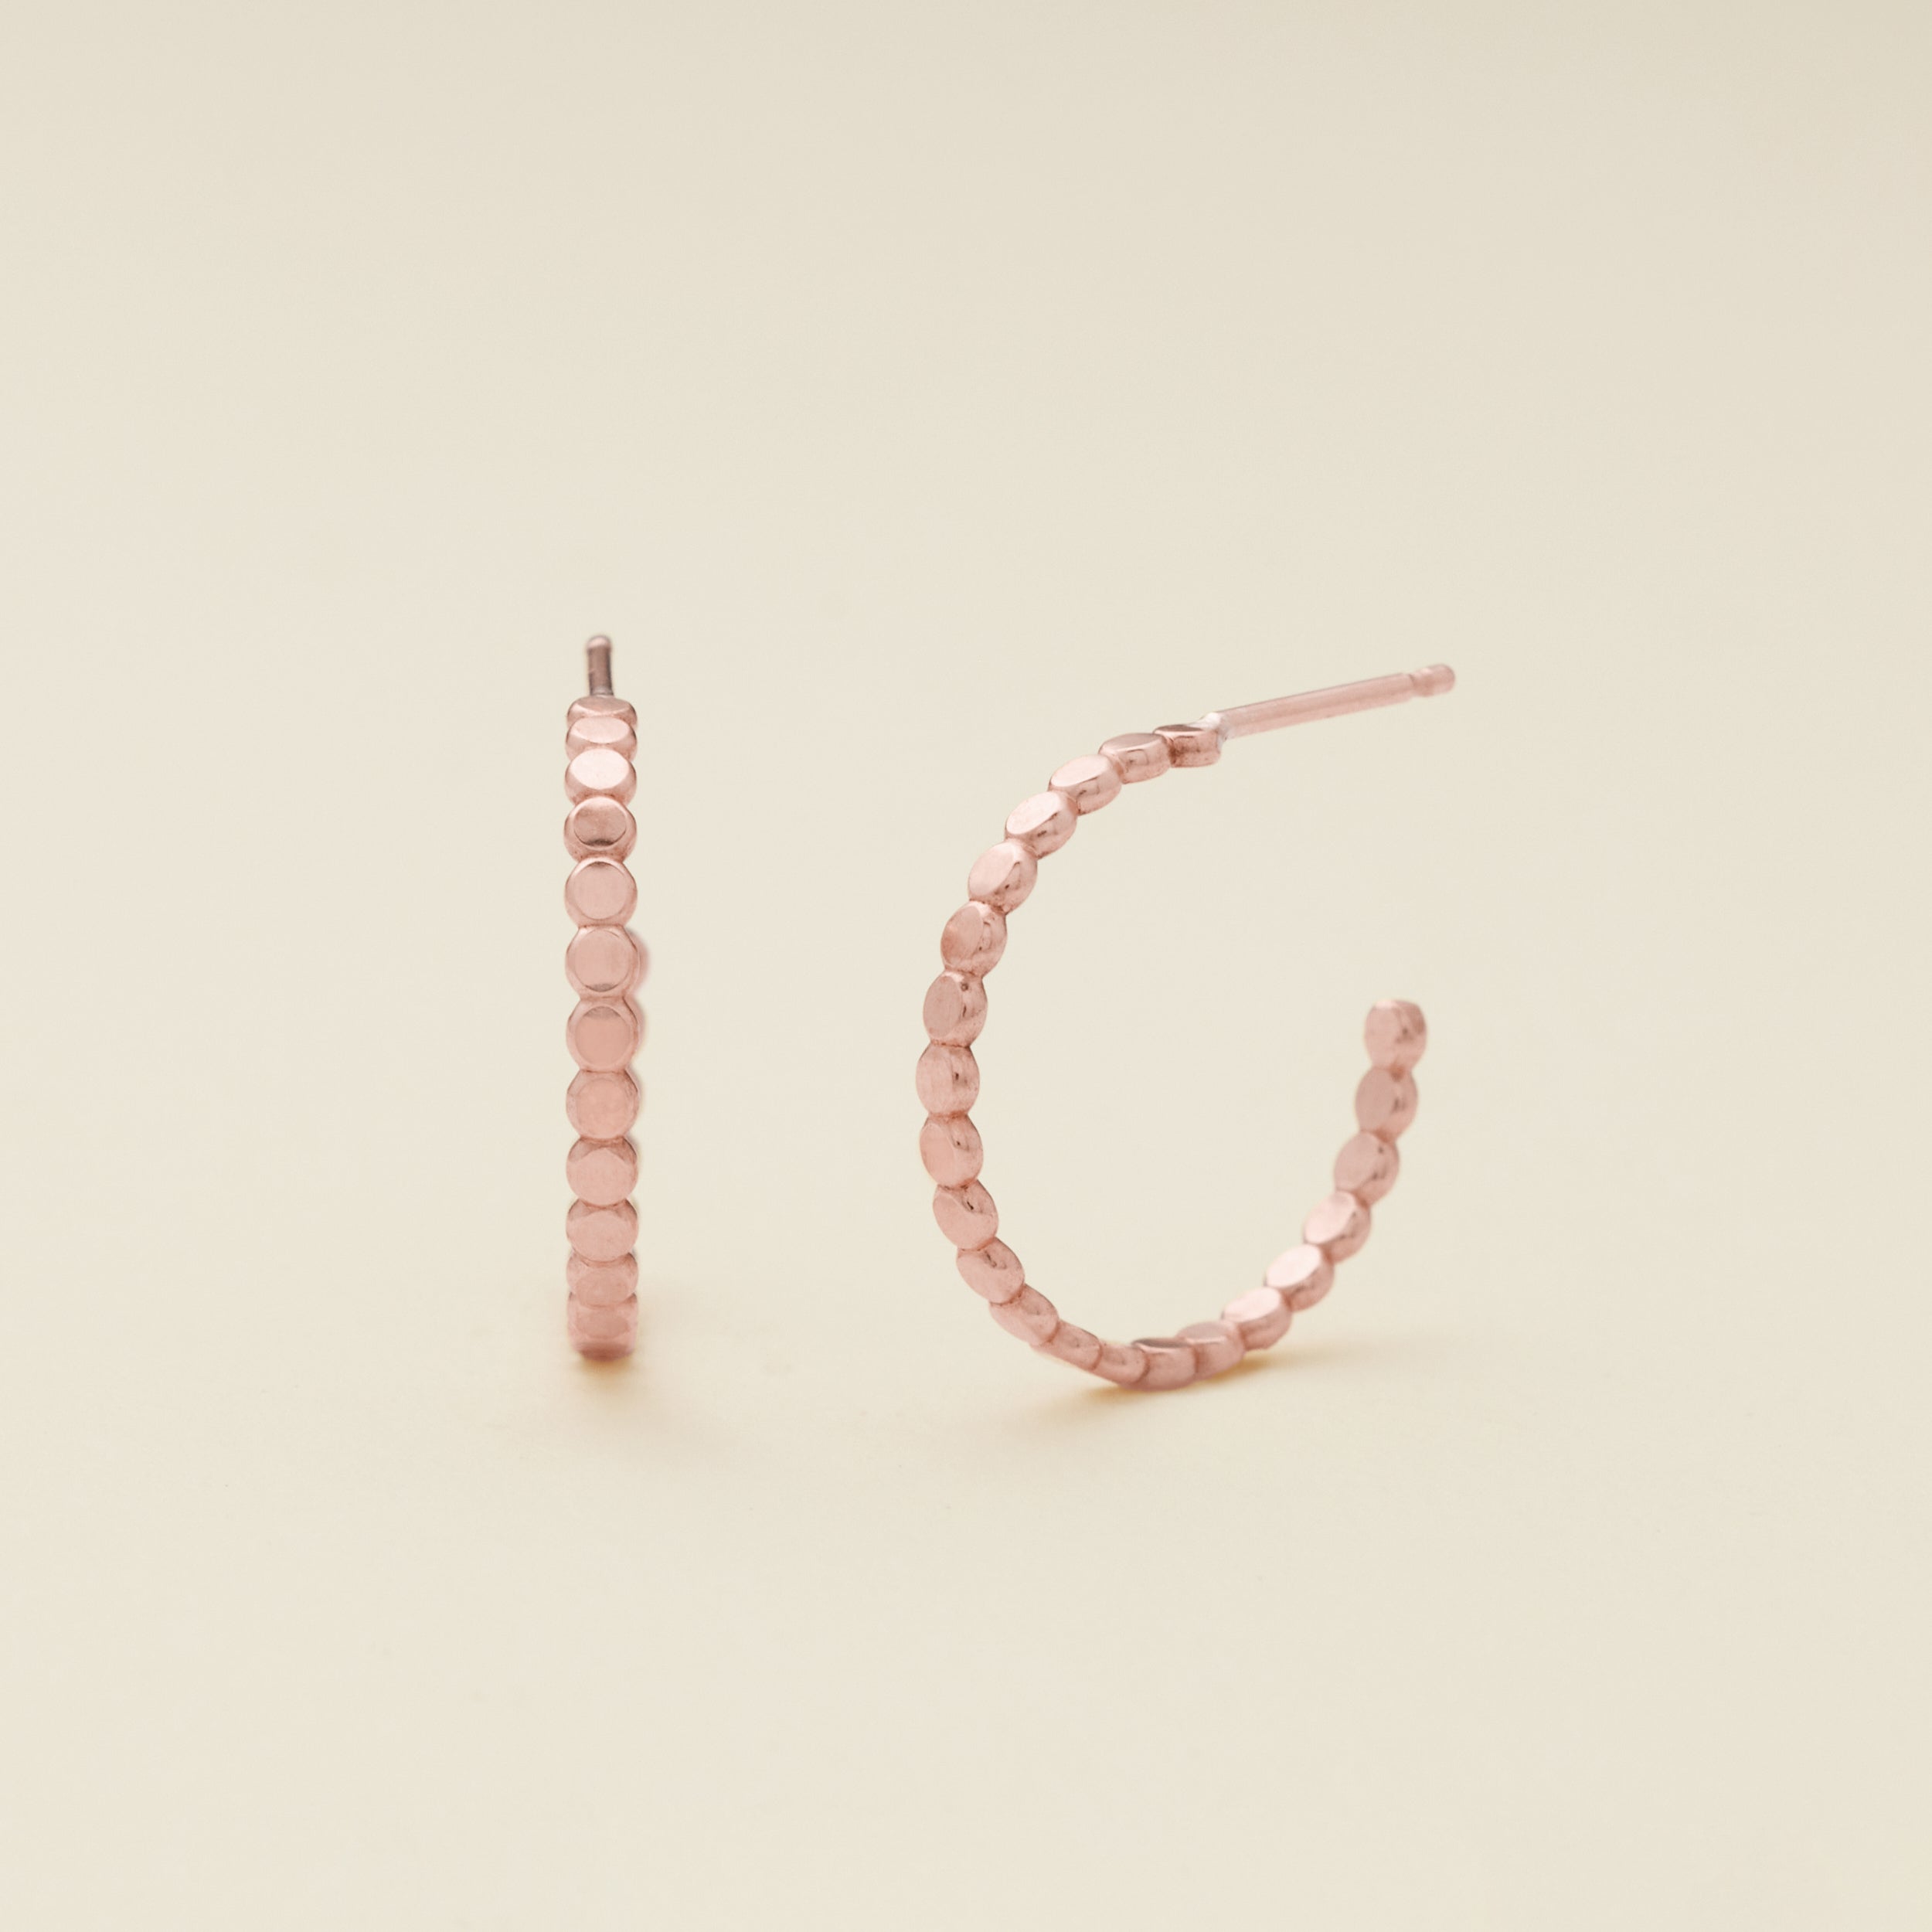 Poppy Hoop Earrings | Final Sale Rose Gold Filled / 20mm Earring